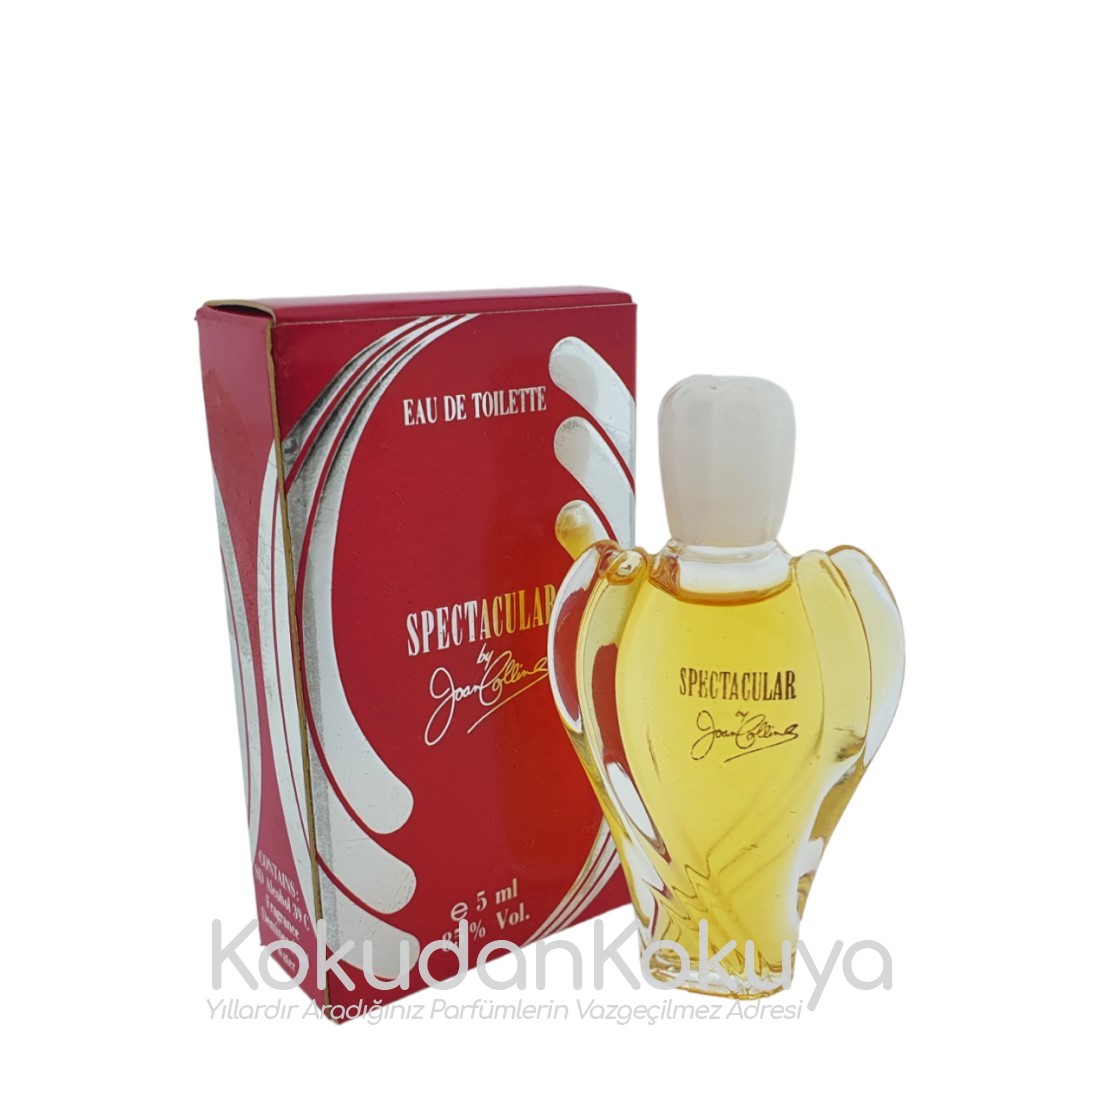 JOAN COLLINS Spectacular (Vintage) Parfüm Kadın 5ml Minyatür (Mini Perfume) Dökme 